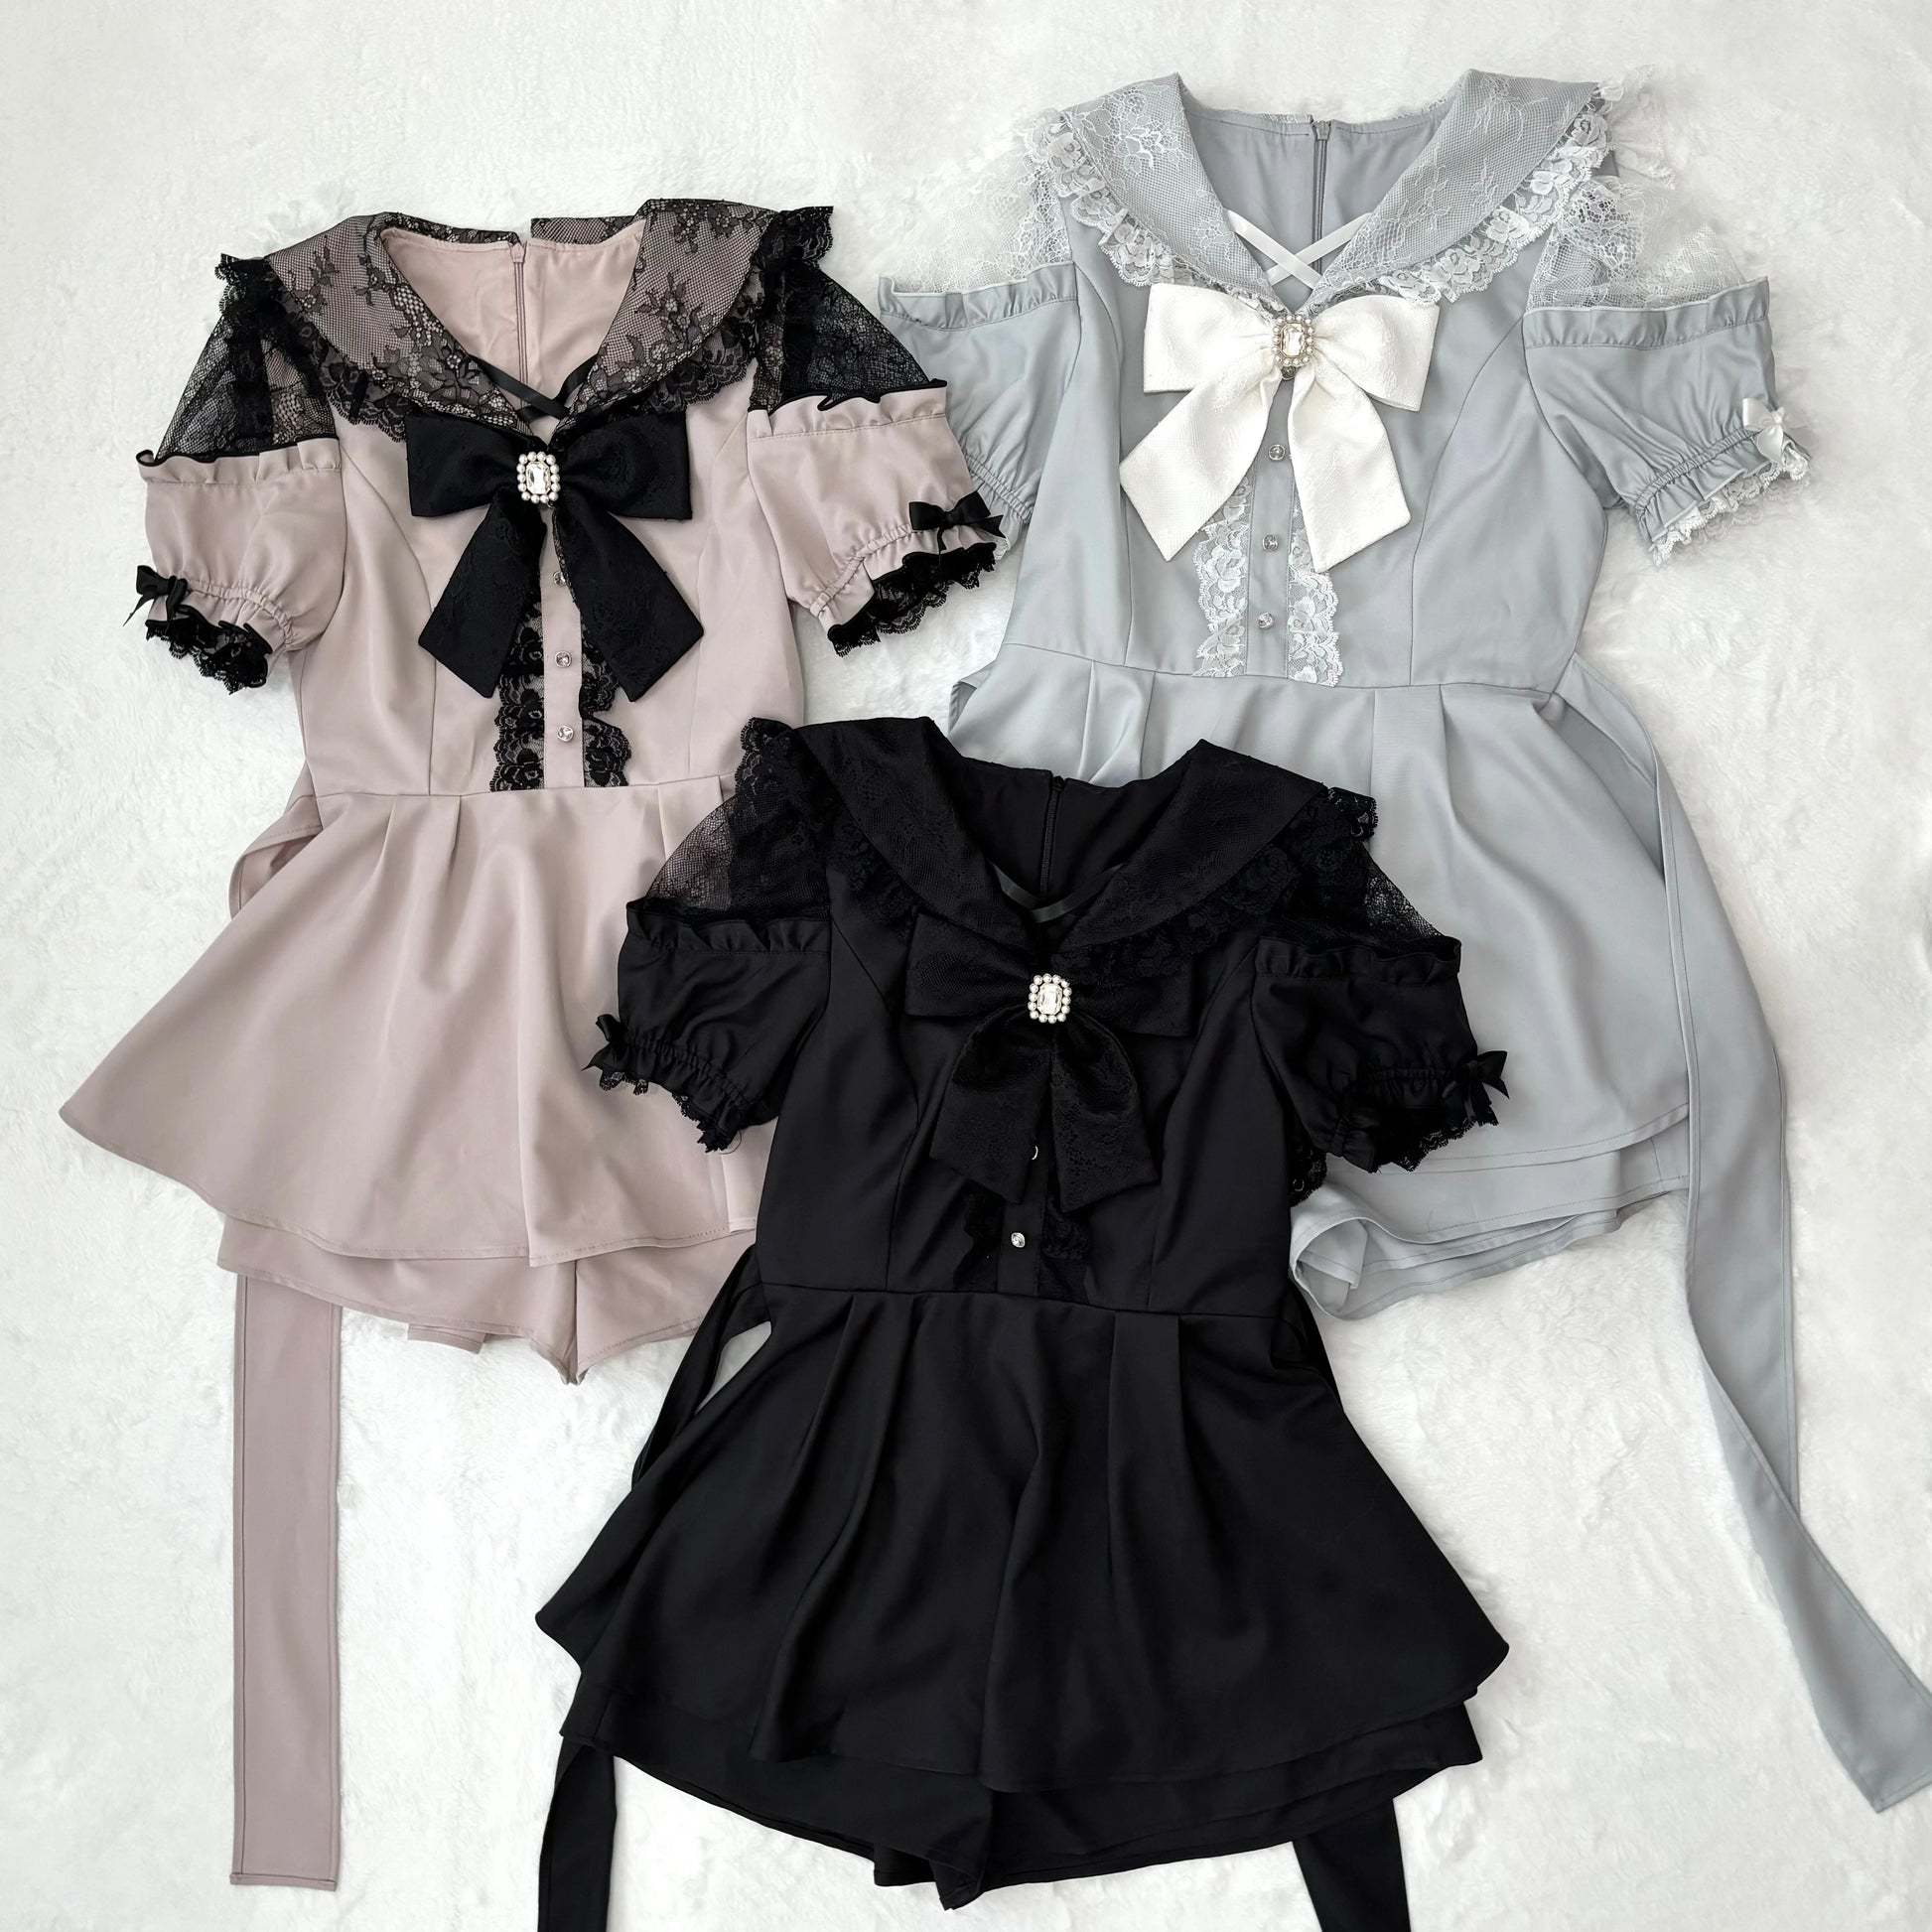 Jirai Kei Dress Set Short Sleeve Lace Dress And Shorts 37652:567810